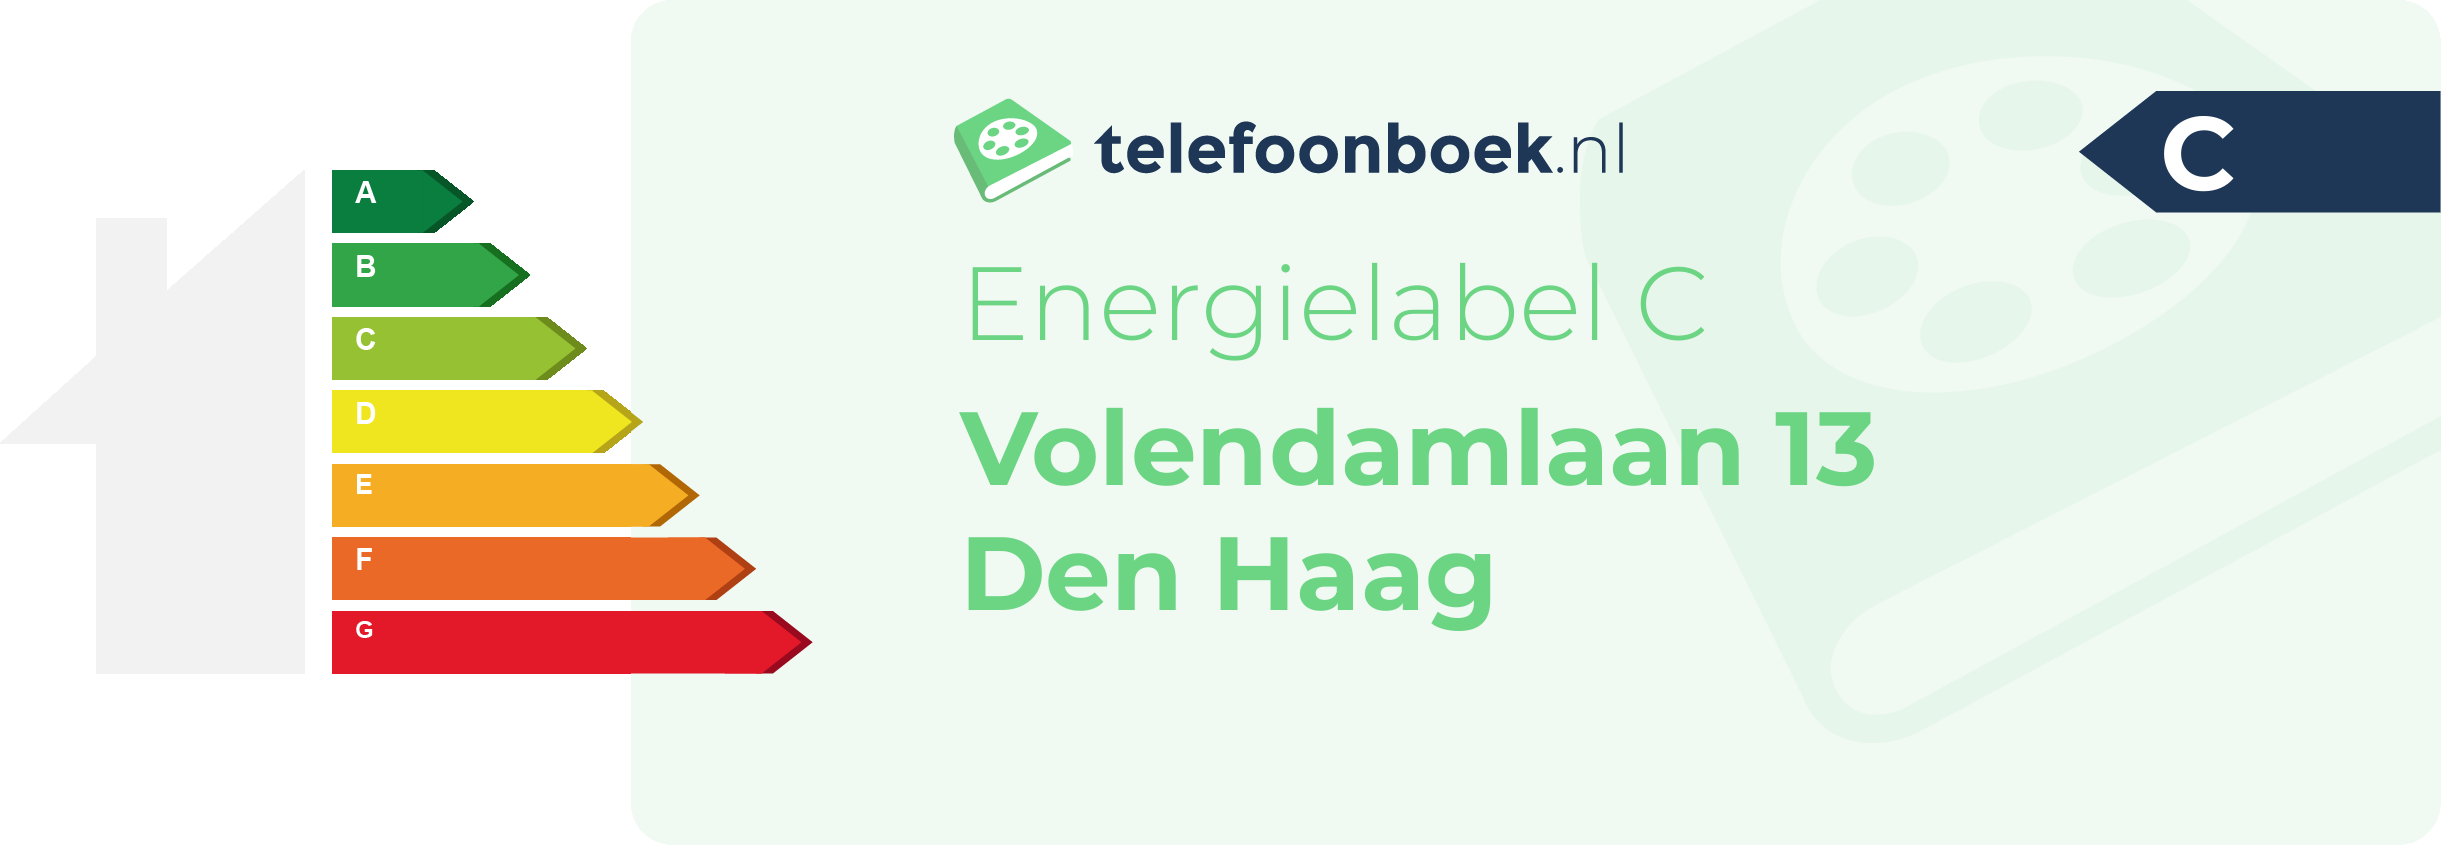 Energielabel Volendamlaan 13 Den Haag